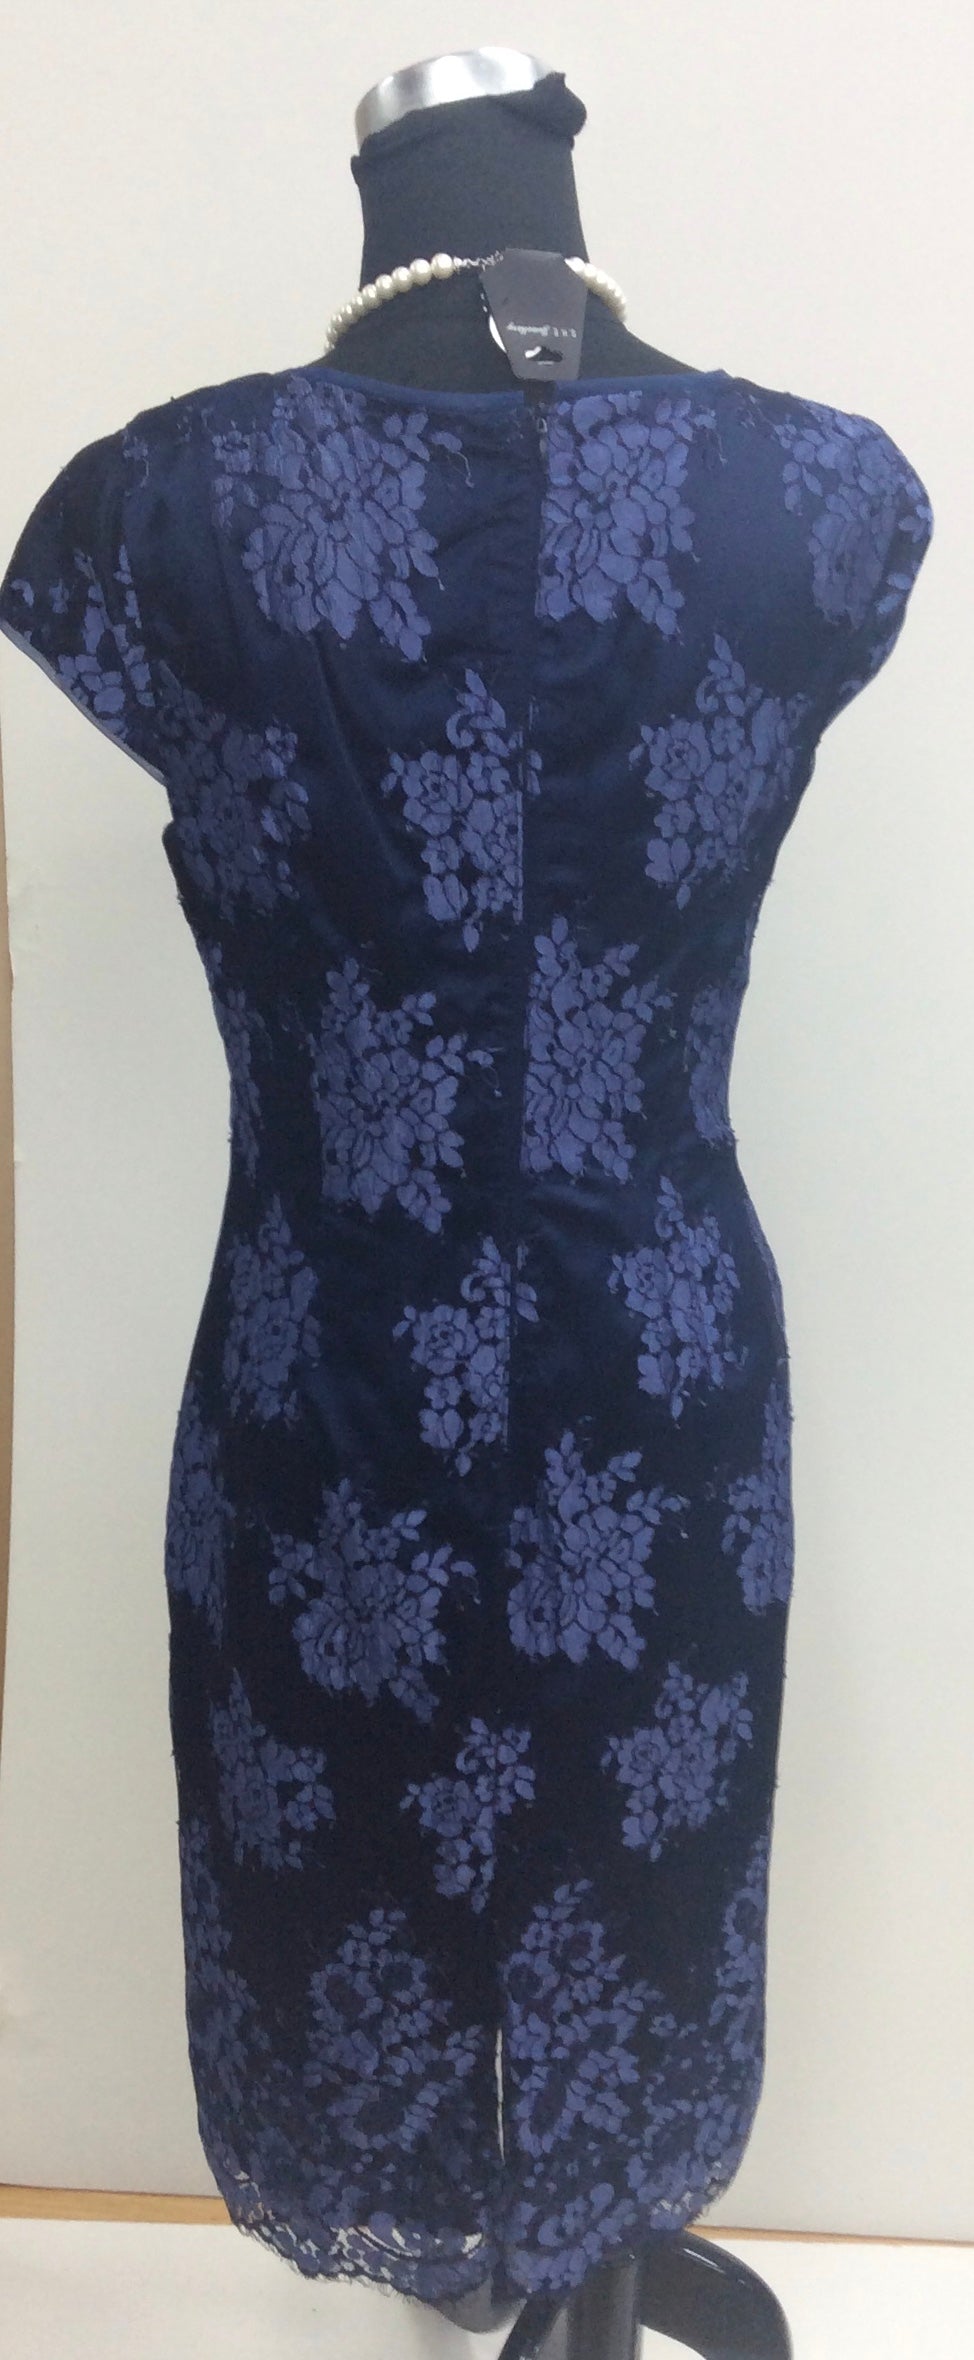 2. Dress and Jacket Sets Catalogue Page 2 - Isabella Fashions